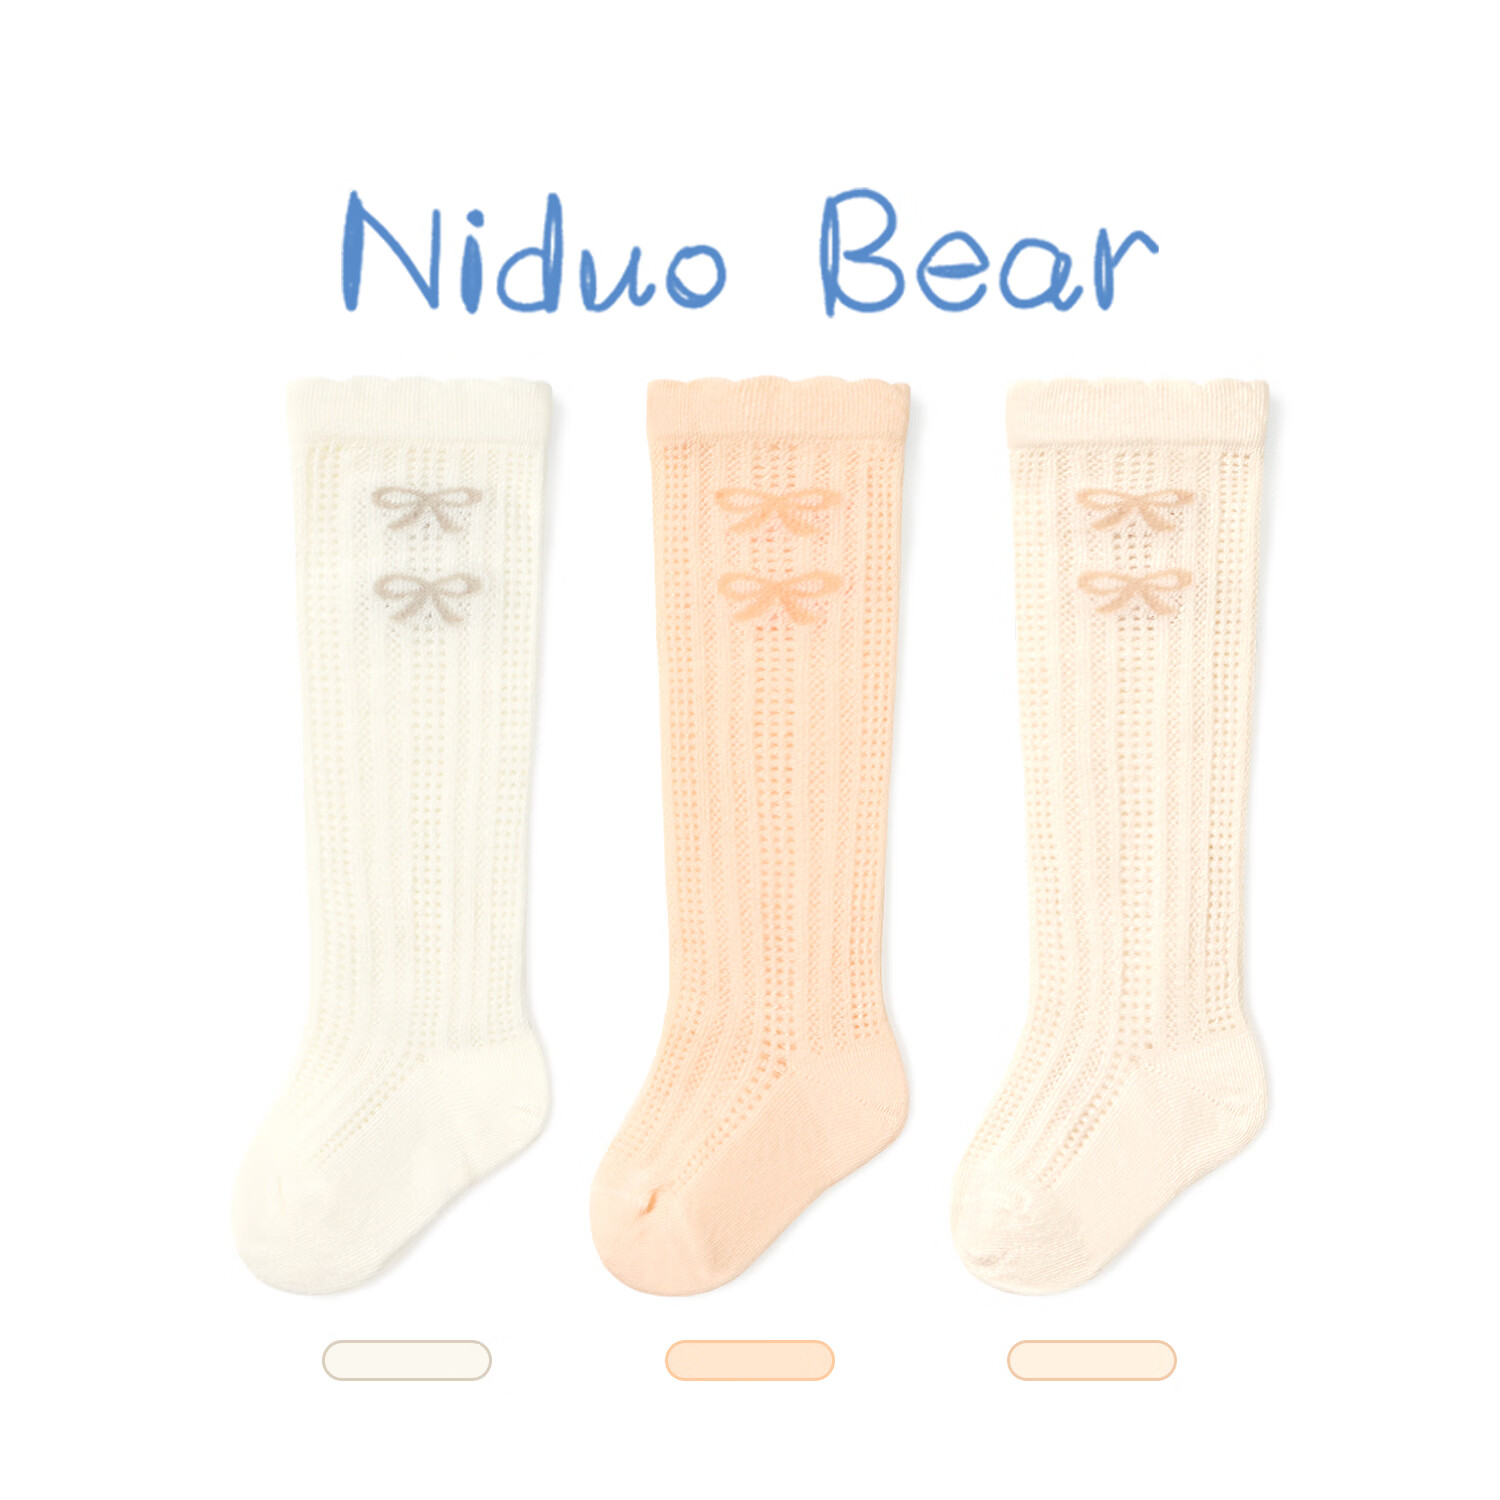 尼多熊儿童袜子婴儿长筒袜春夏薄款网眼透气宝宝新生儿护腿防蚊袜